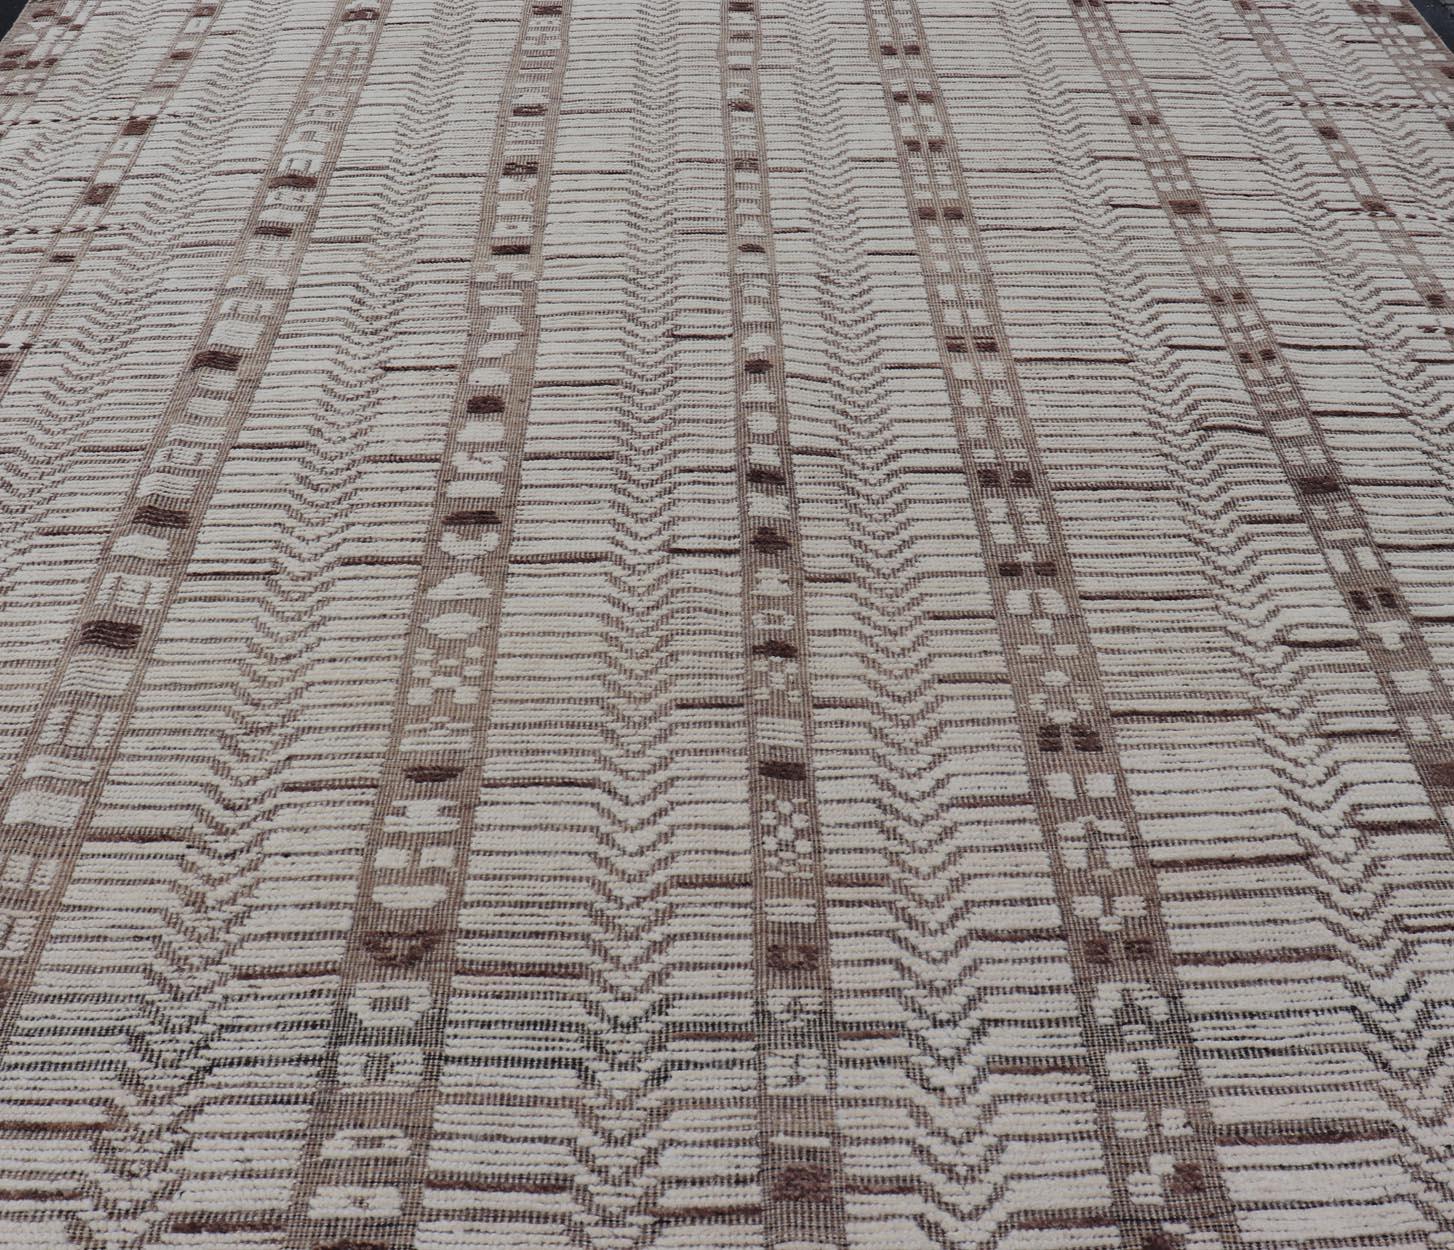 Marokkanischer Stil Moderner lässiger handgeknüpfter Teppich in Creme und Tan mit Textur. Keivan Woven Arts; Teppich AAR-1663, Herkunftsland / Art: Afghanistan / Modern Casual, etwa Anfang des 21. Jahrhunderts.
Maße: 12'1 x 16'0 
Dieser moderne,